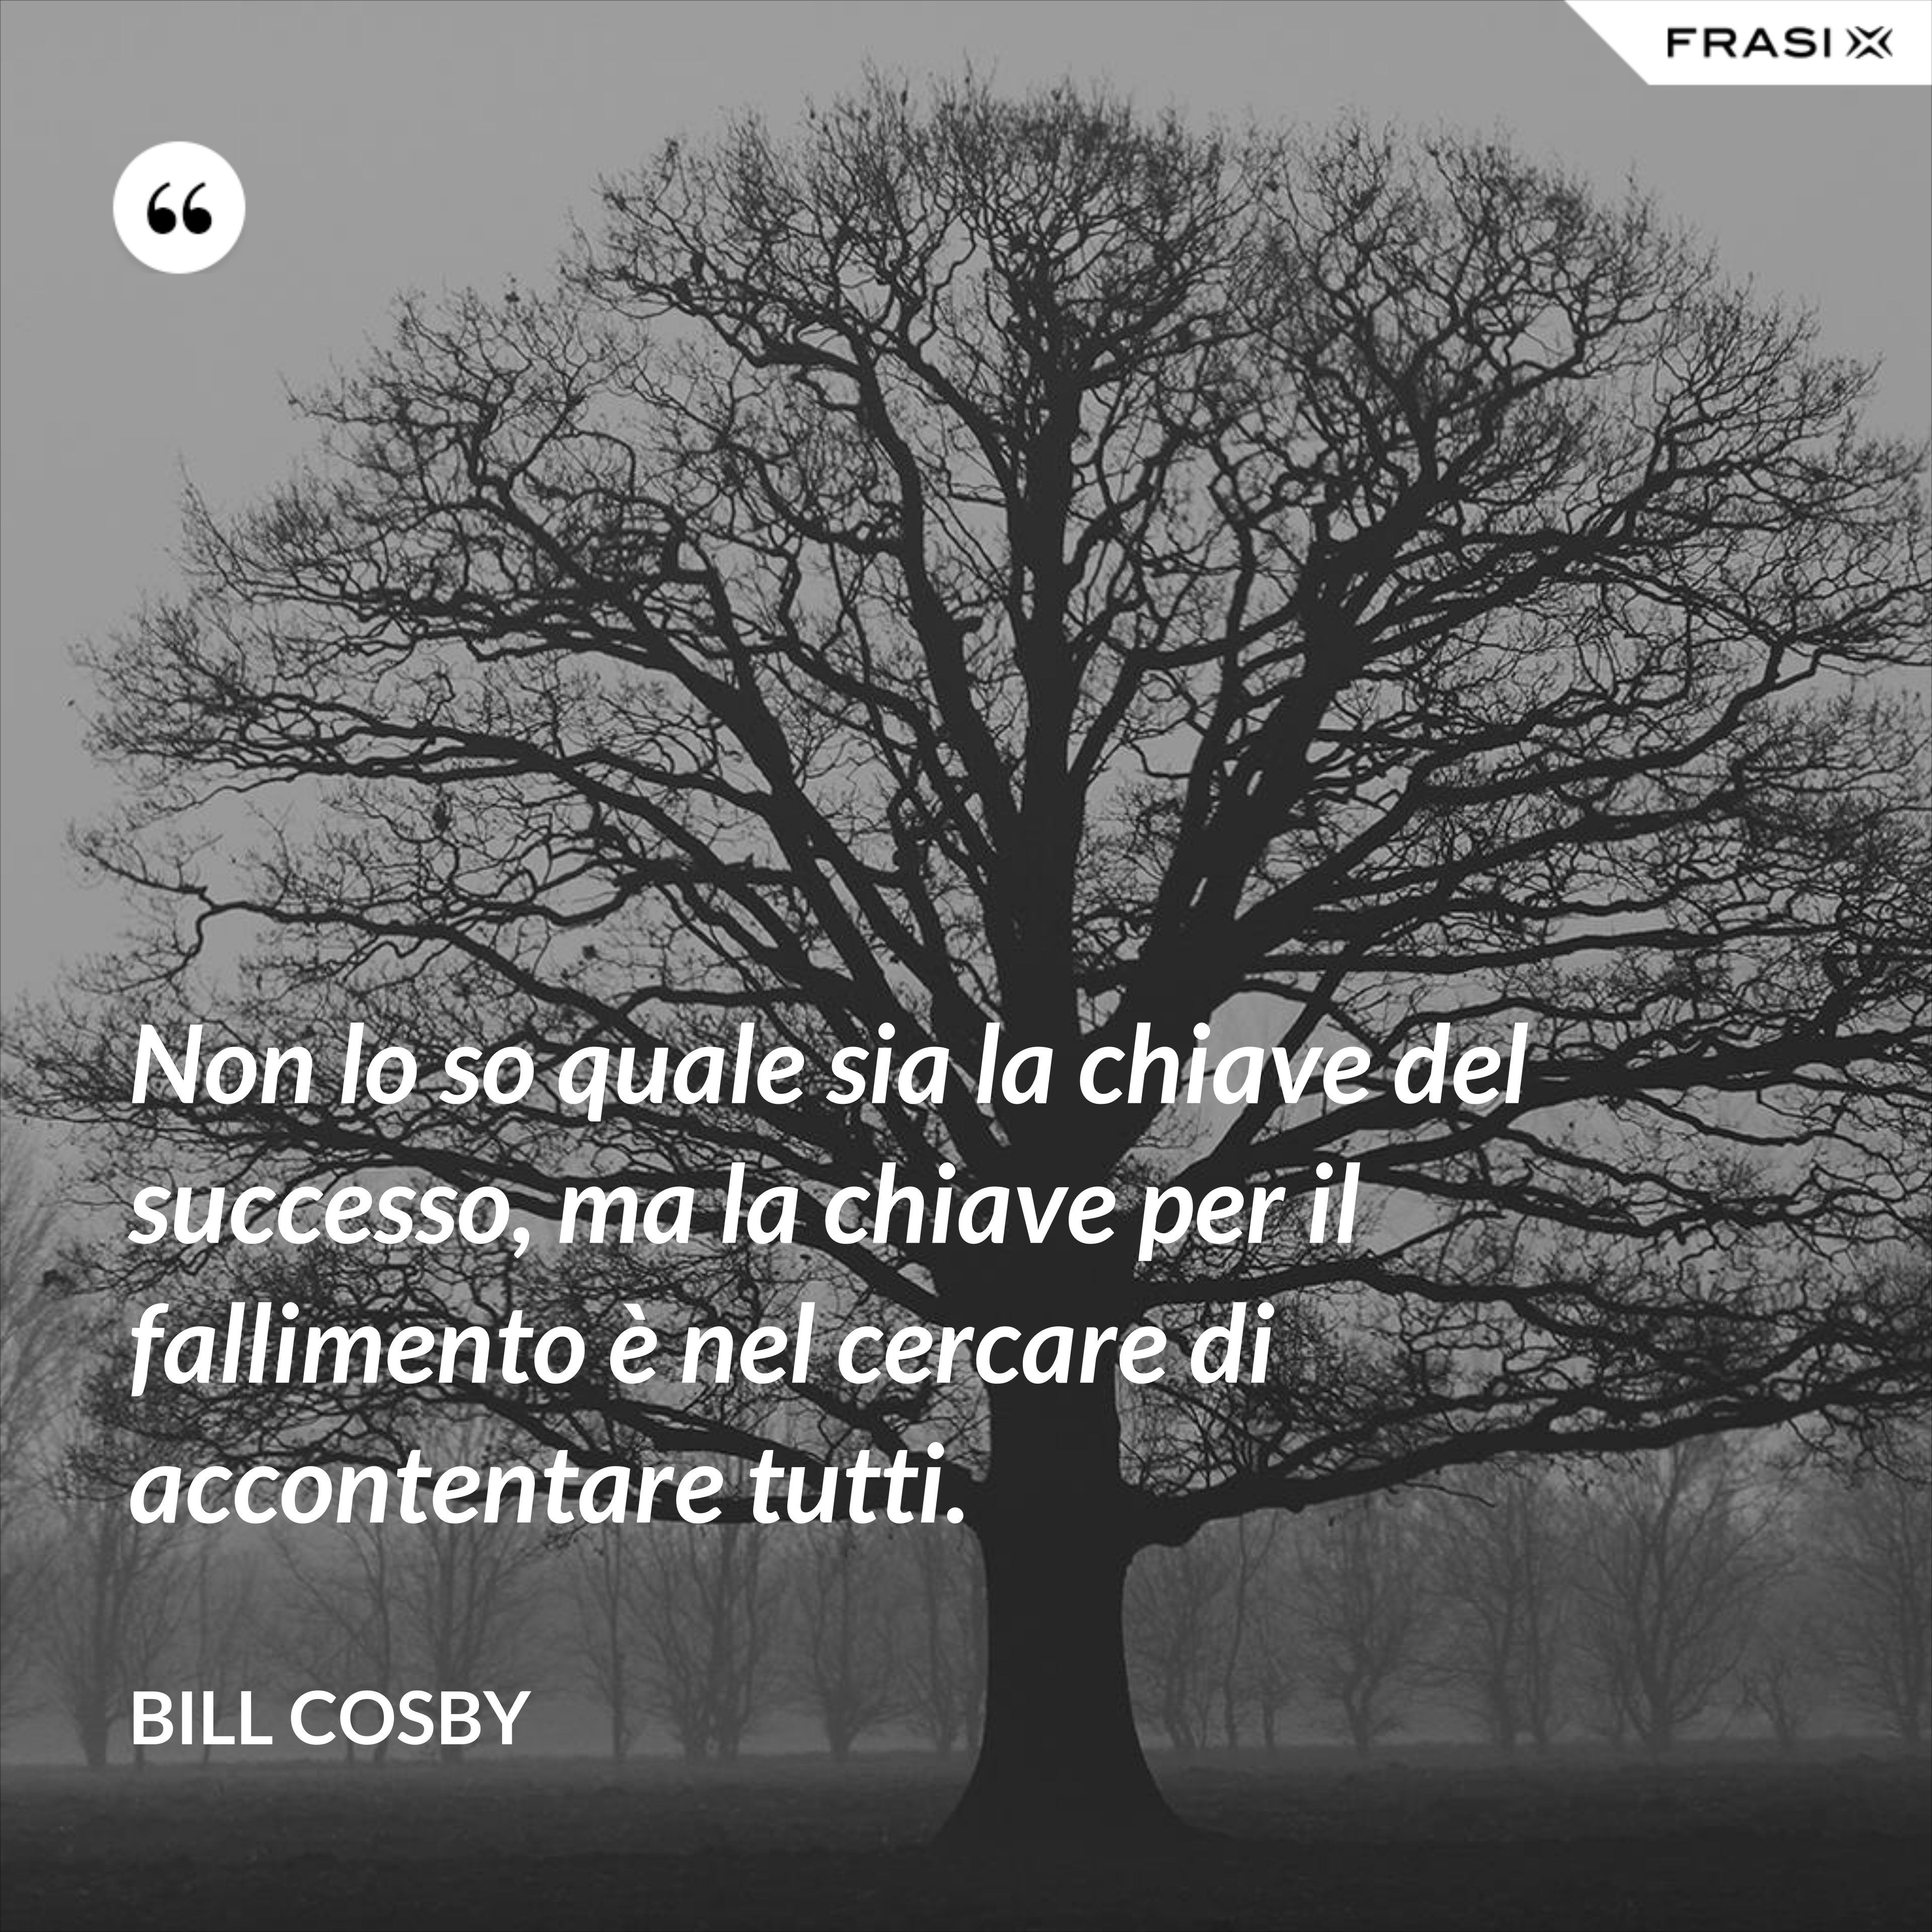 Non lo so quale sia la chiave del successo, ma la chiave per il fallimento è nel cercare di accontentare tutti. - Bill Cosby